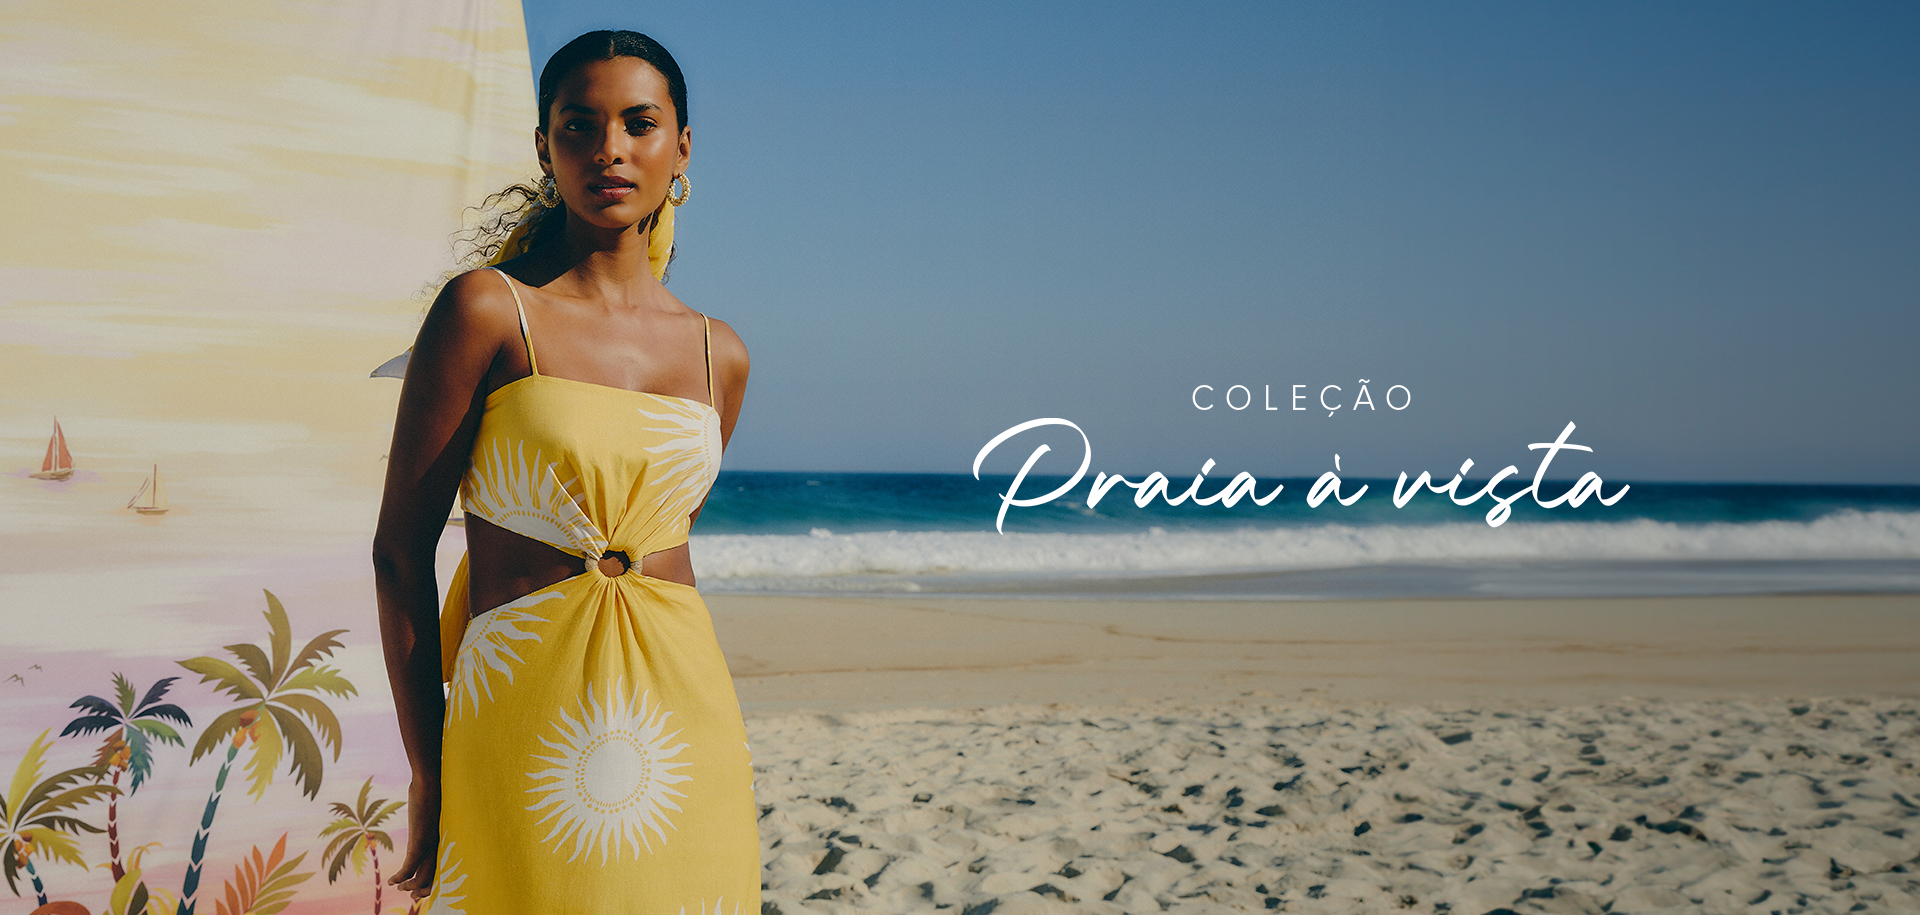 Modelo na praia utilizando vestido com recortes laterais, argola frontal e alça fina, na cor amarela com estampa de sol da coleção praia à vista.